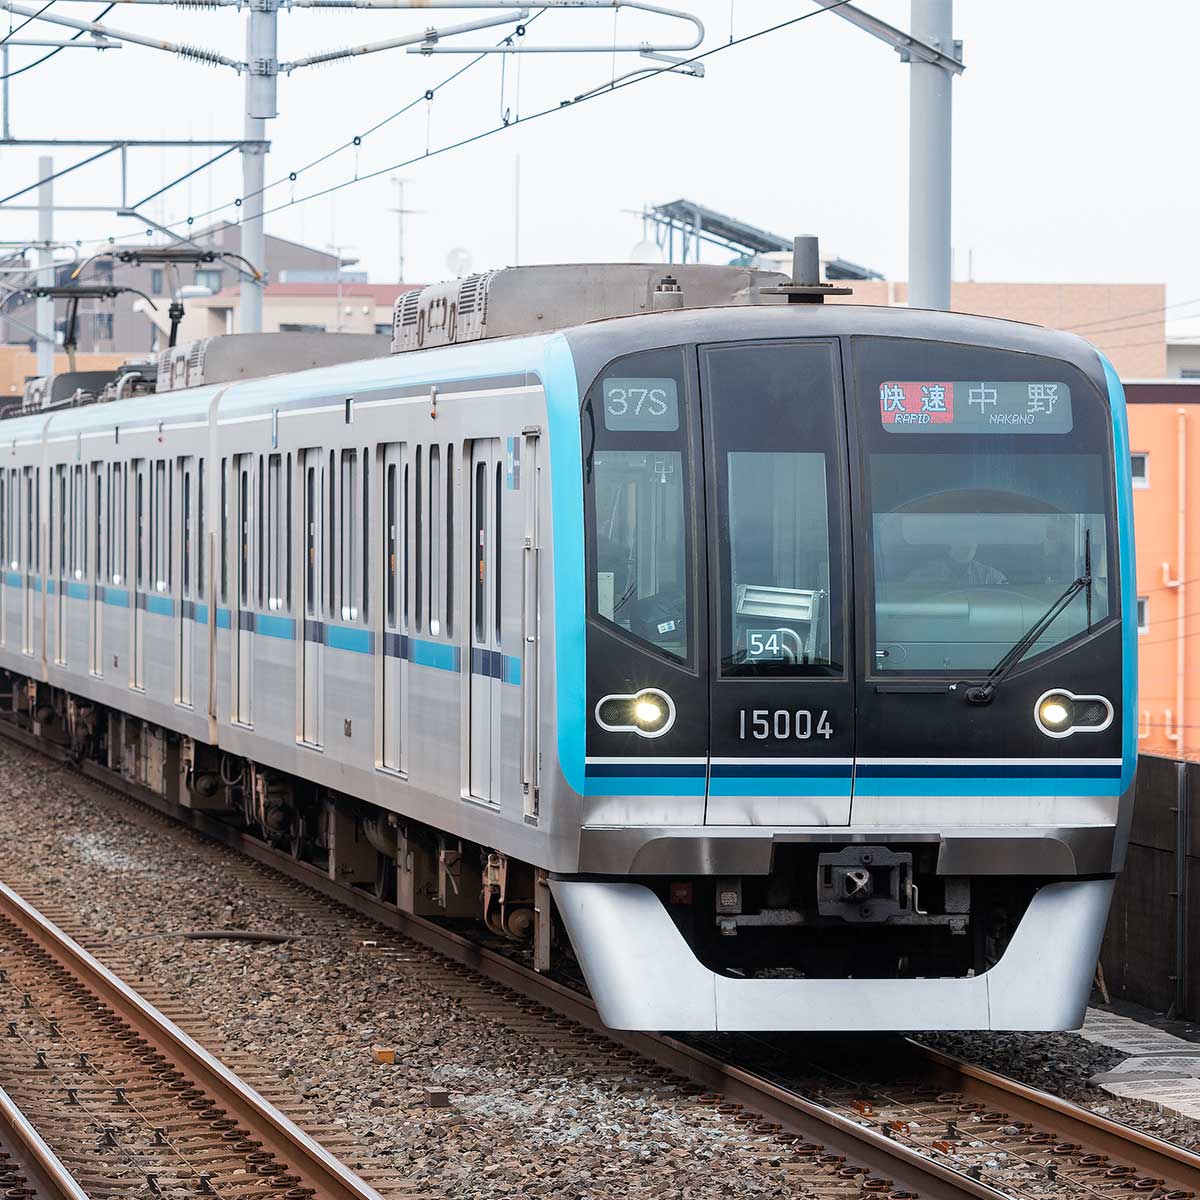 GM グリーンマックス 東京メトロ東西線 15000系 10両 - 鉄道模型